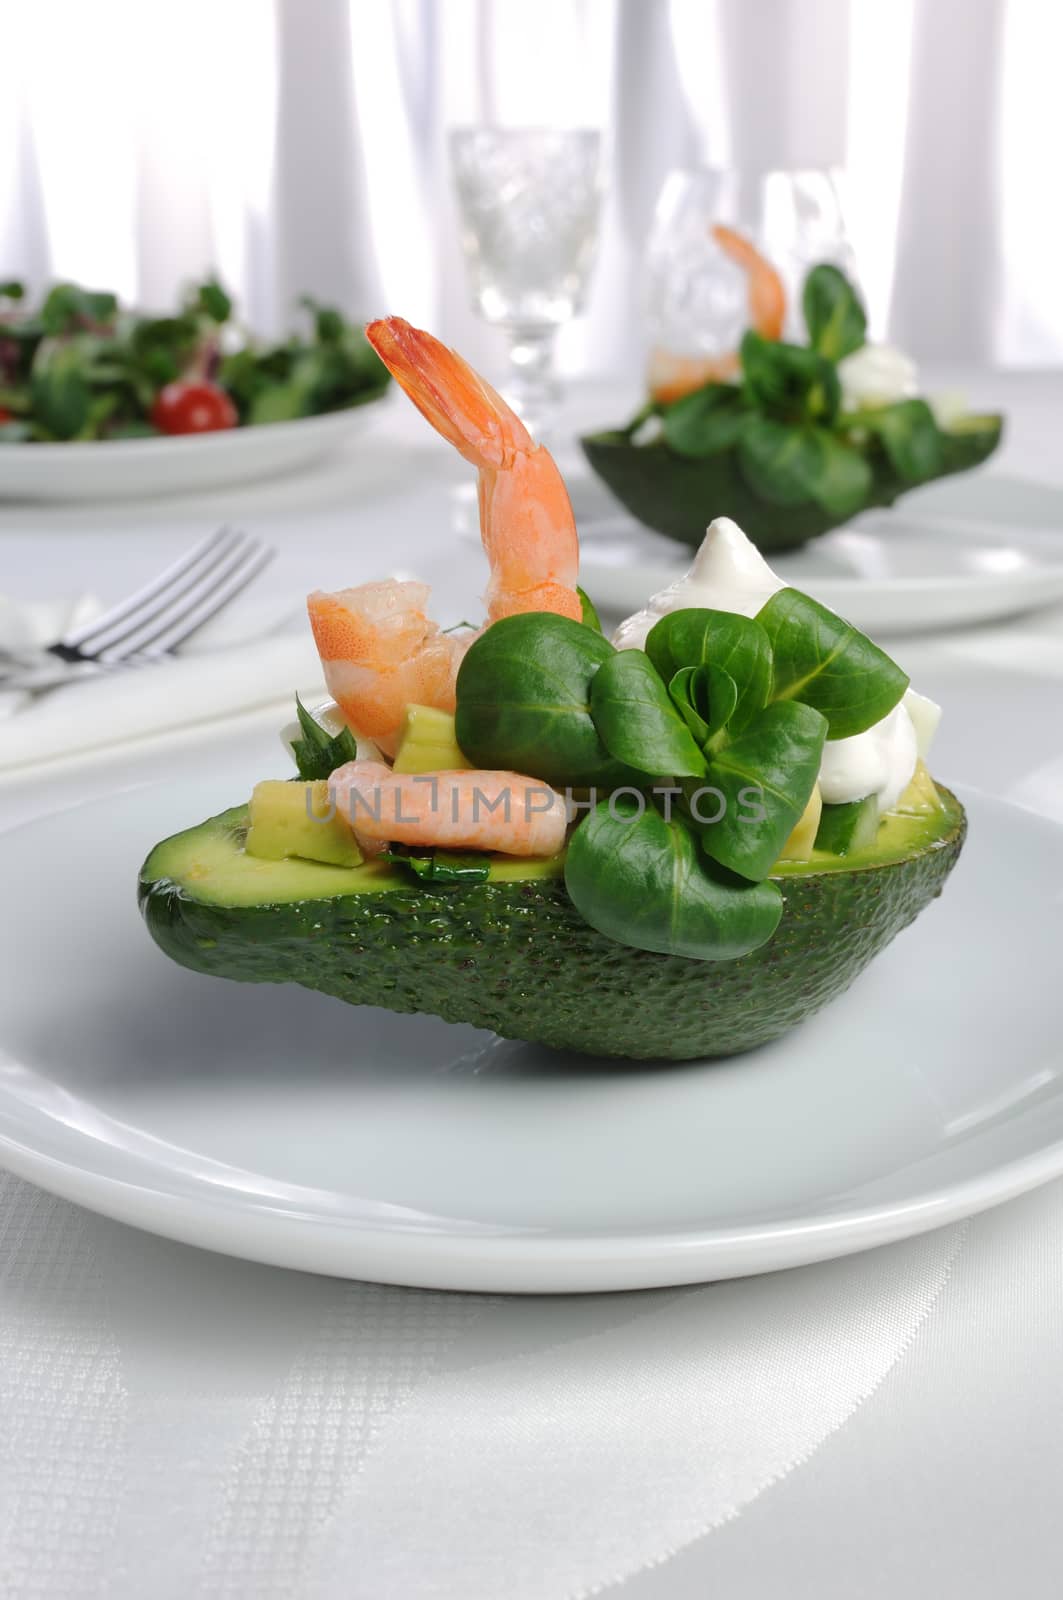 tender appetizer of avocado and shrimp